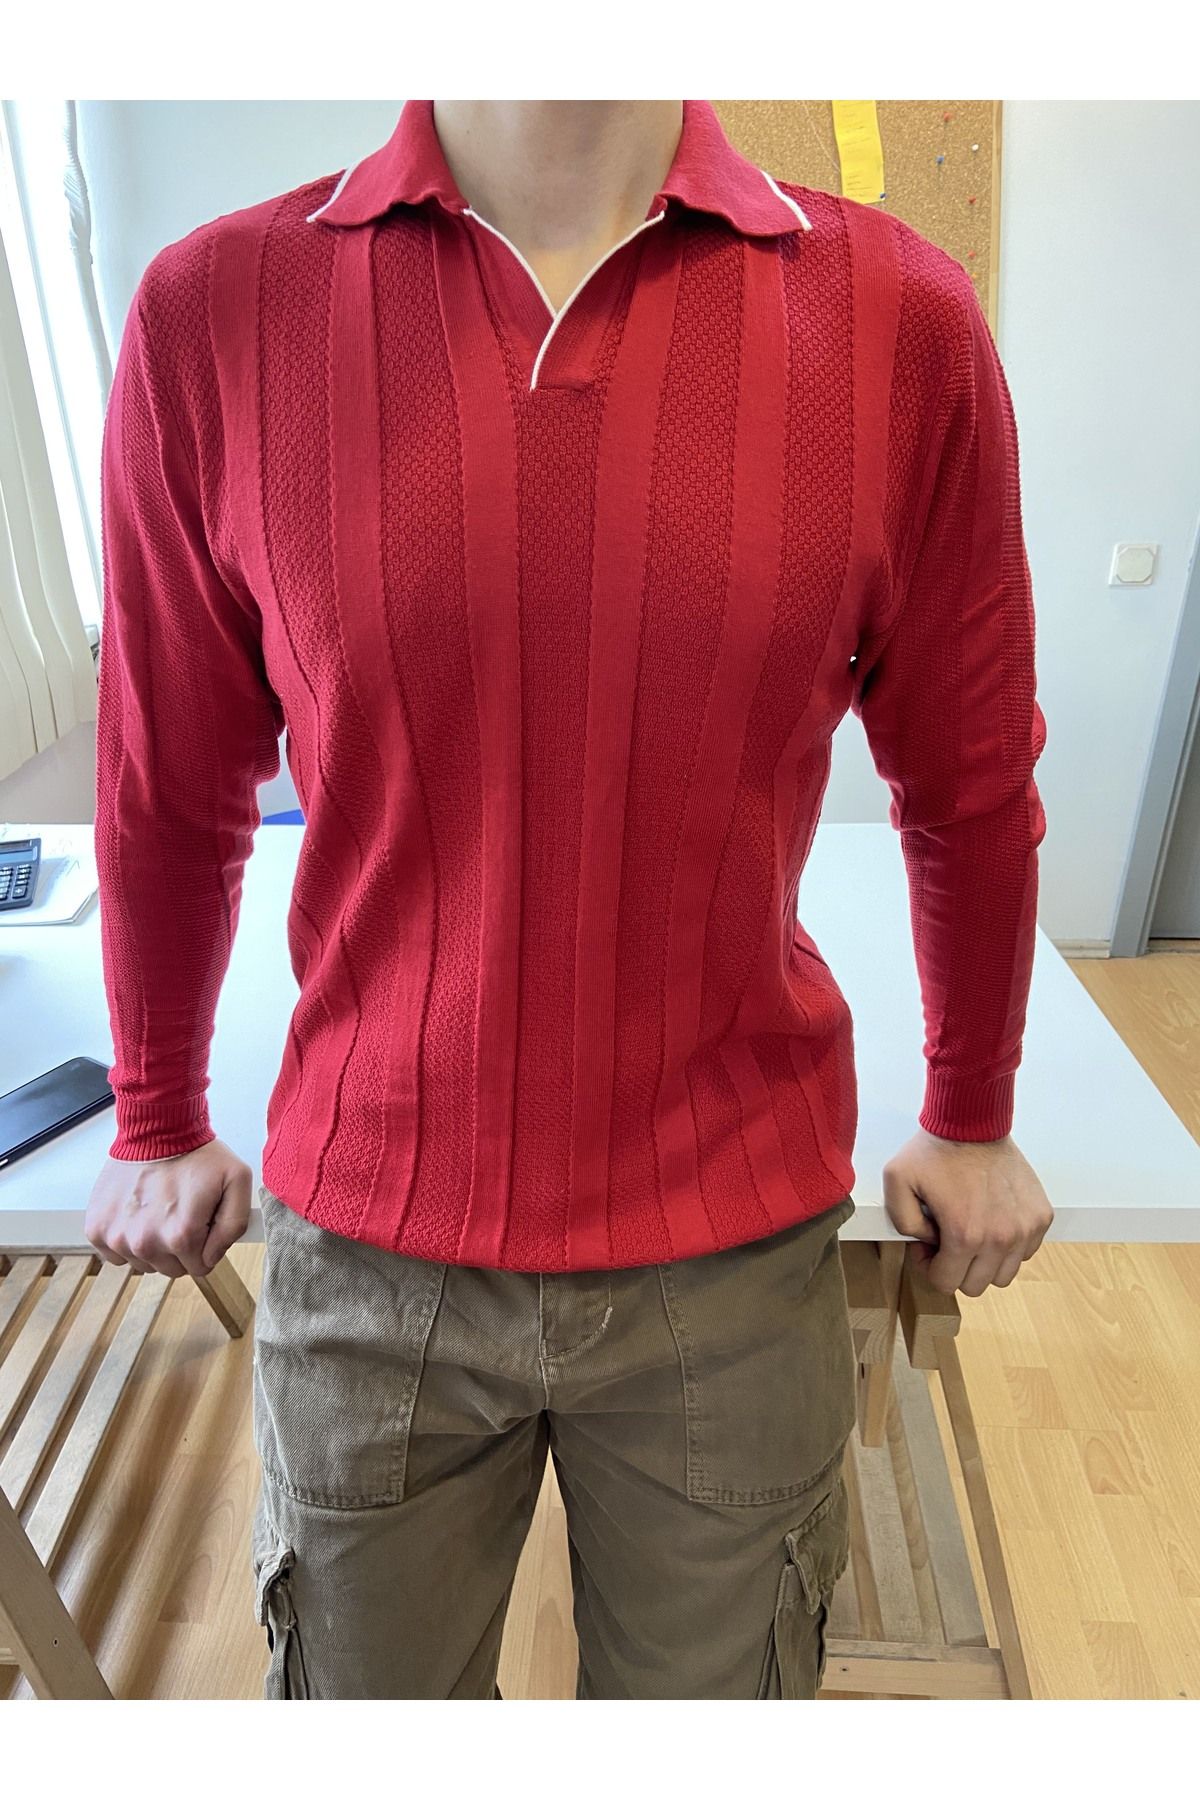 Tarz Cool Kırmızı Erkek Kalın Şeritli Polo Yaka Triko T-Shirt